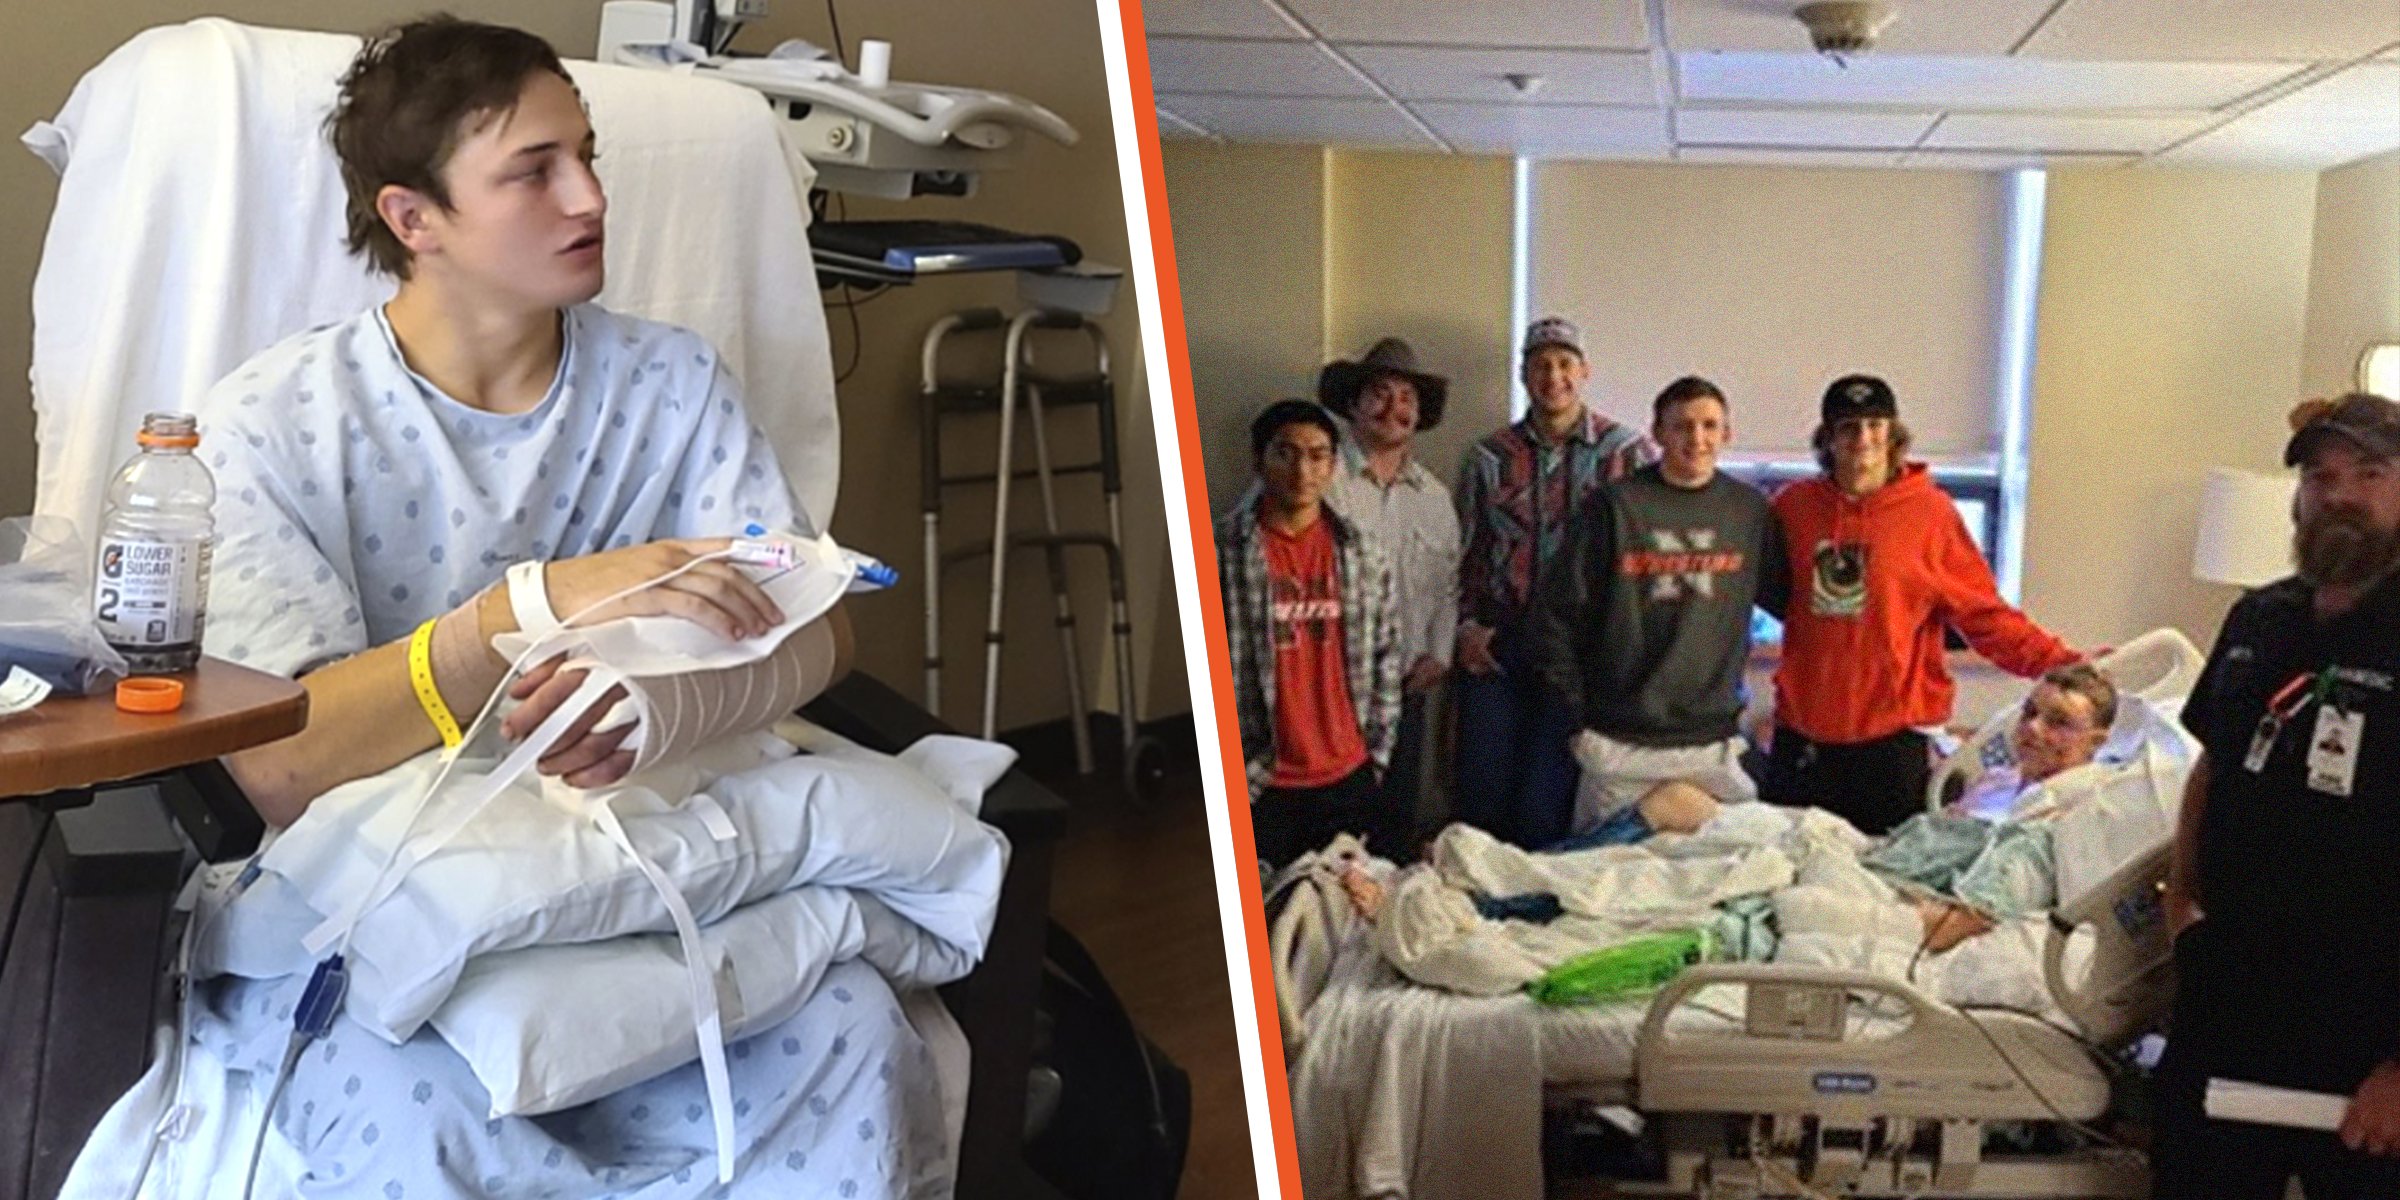 Brady Lowry | Kendell Cummings en el hospital con los miembros de su equipo de lucha | Foto: Twitter.com/KSLSharaPark